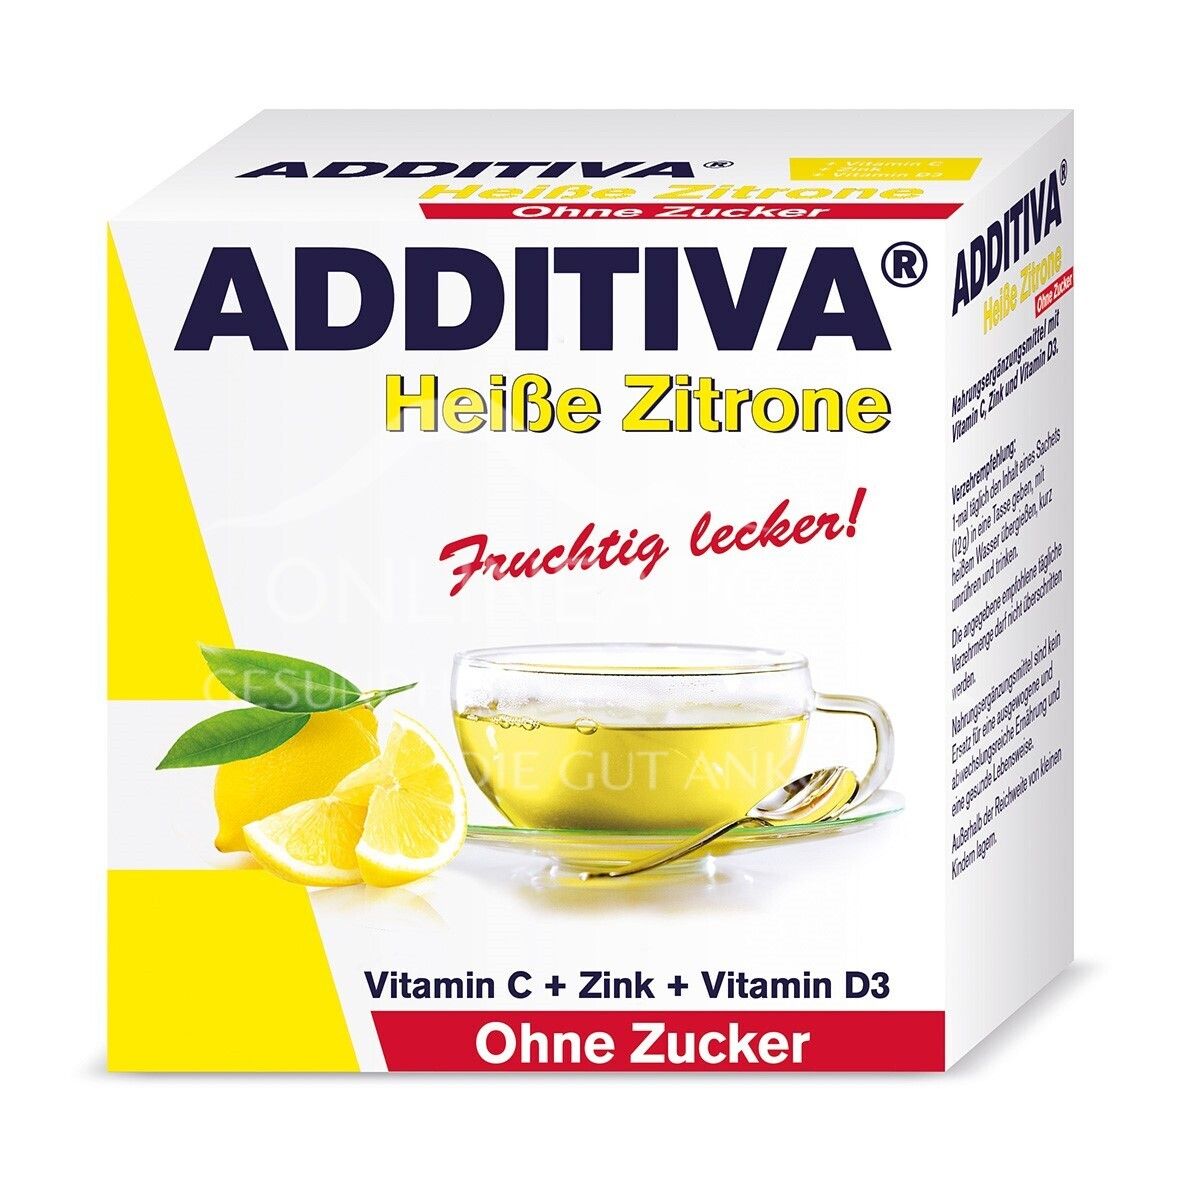 ADDITIVA® Heiße Zitrone Heißgetränkepulver ohne Zucker 10 g